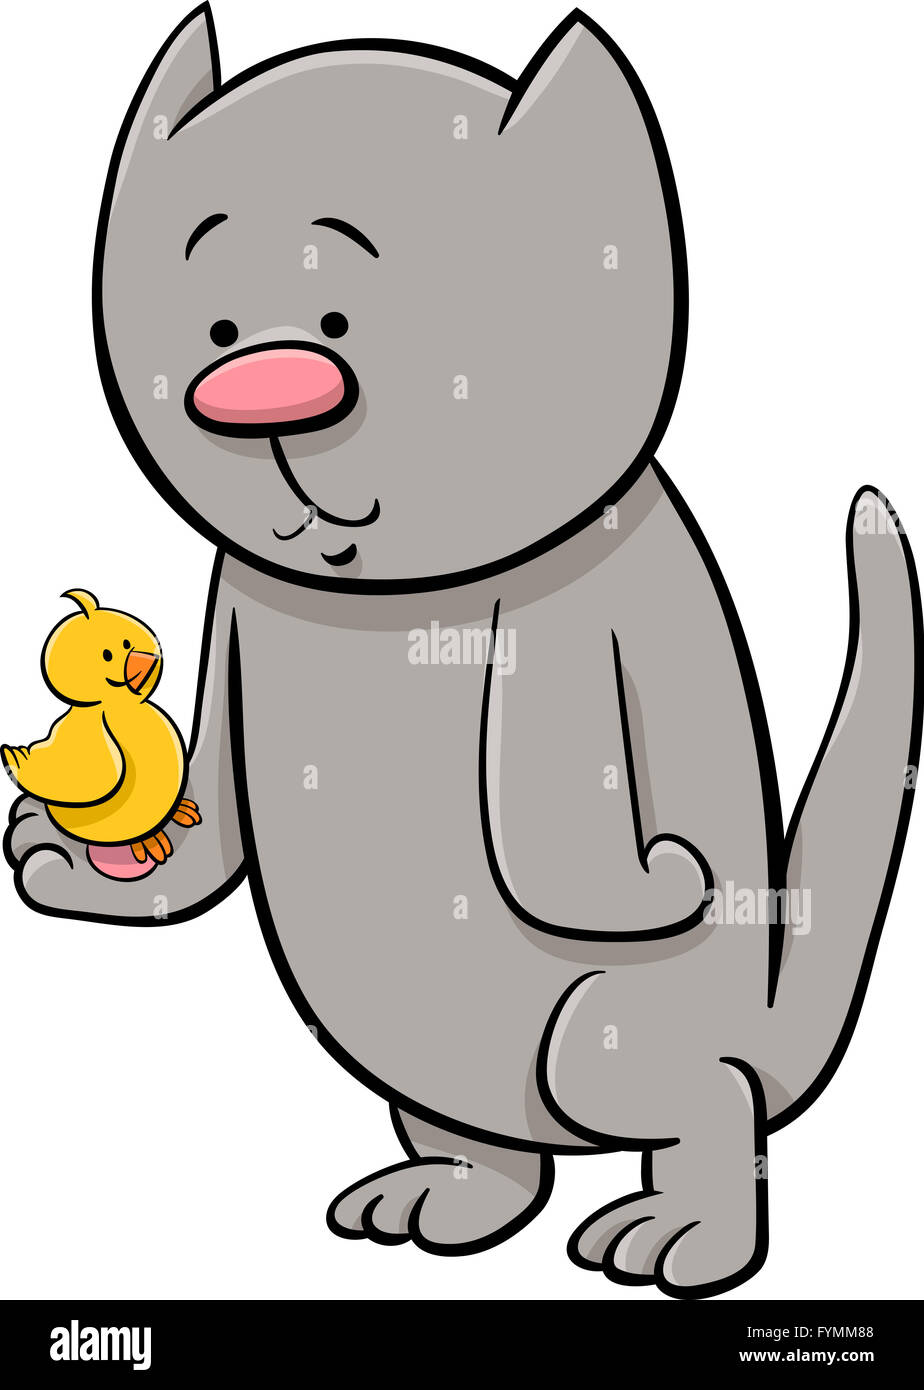 cat with canary cartoon illustration Stock Photo